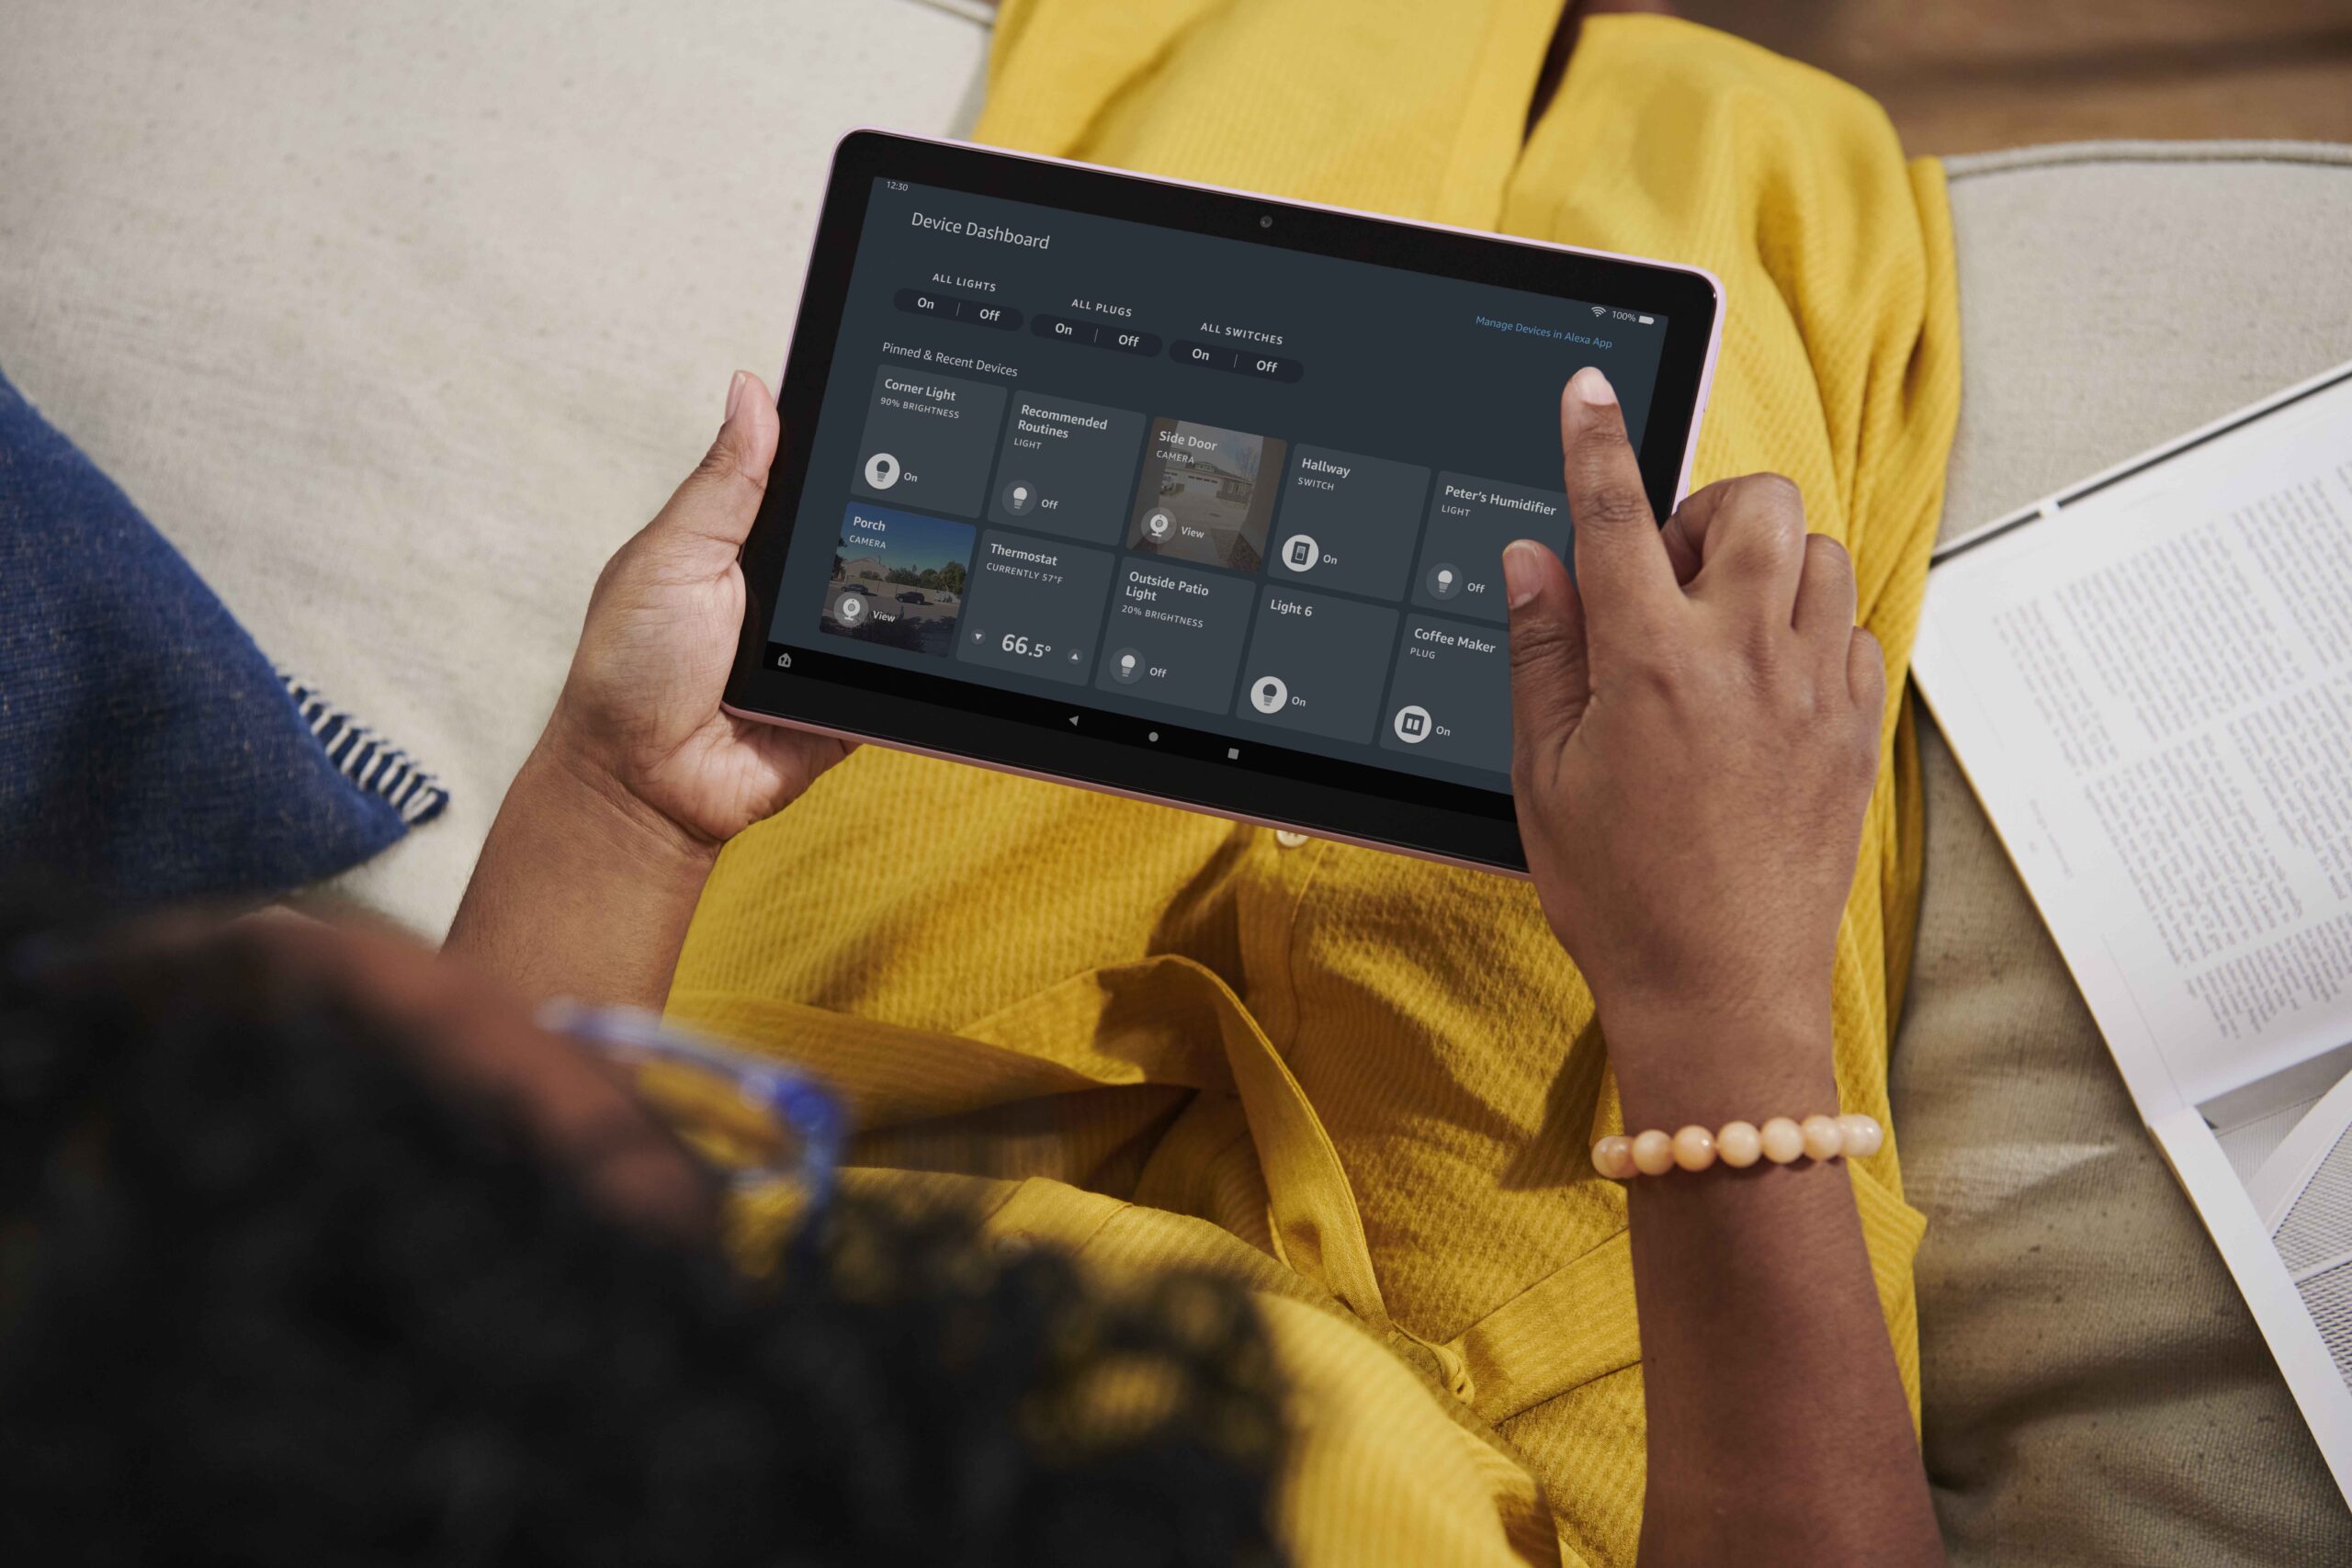 NOUVELLE tablette  Kindle Fire HD 10 10e génération 32G Alexa  noire/blan